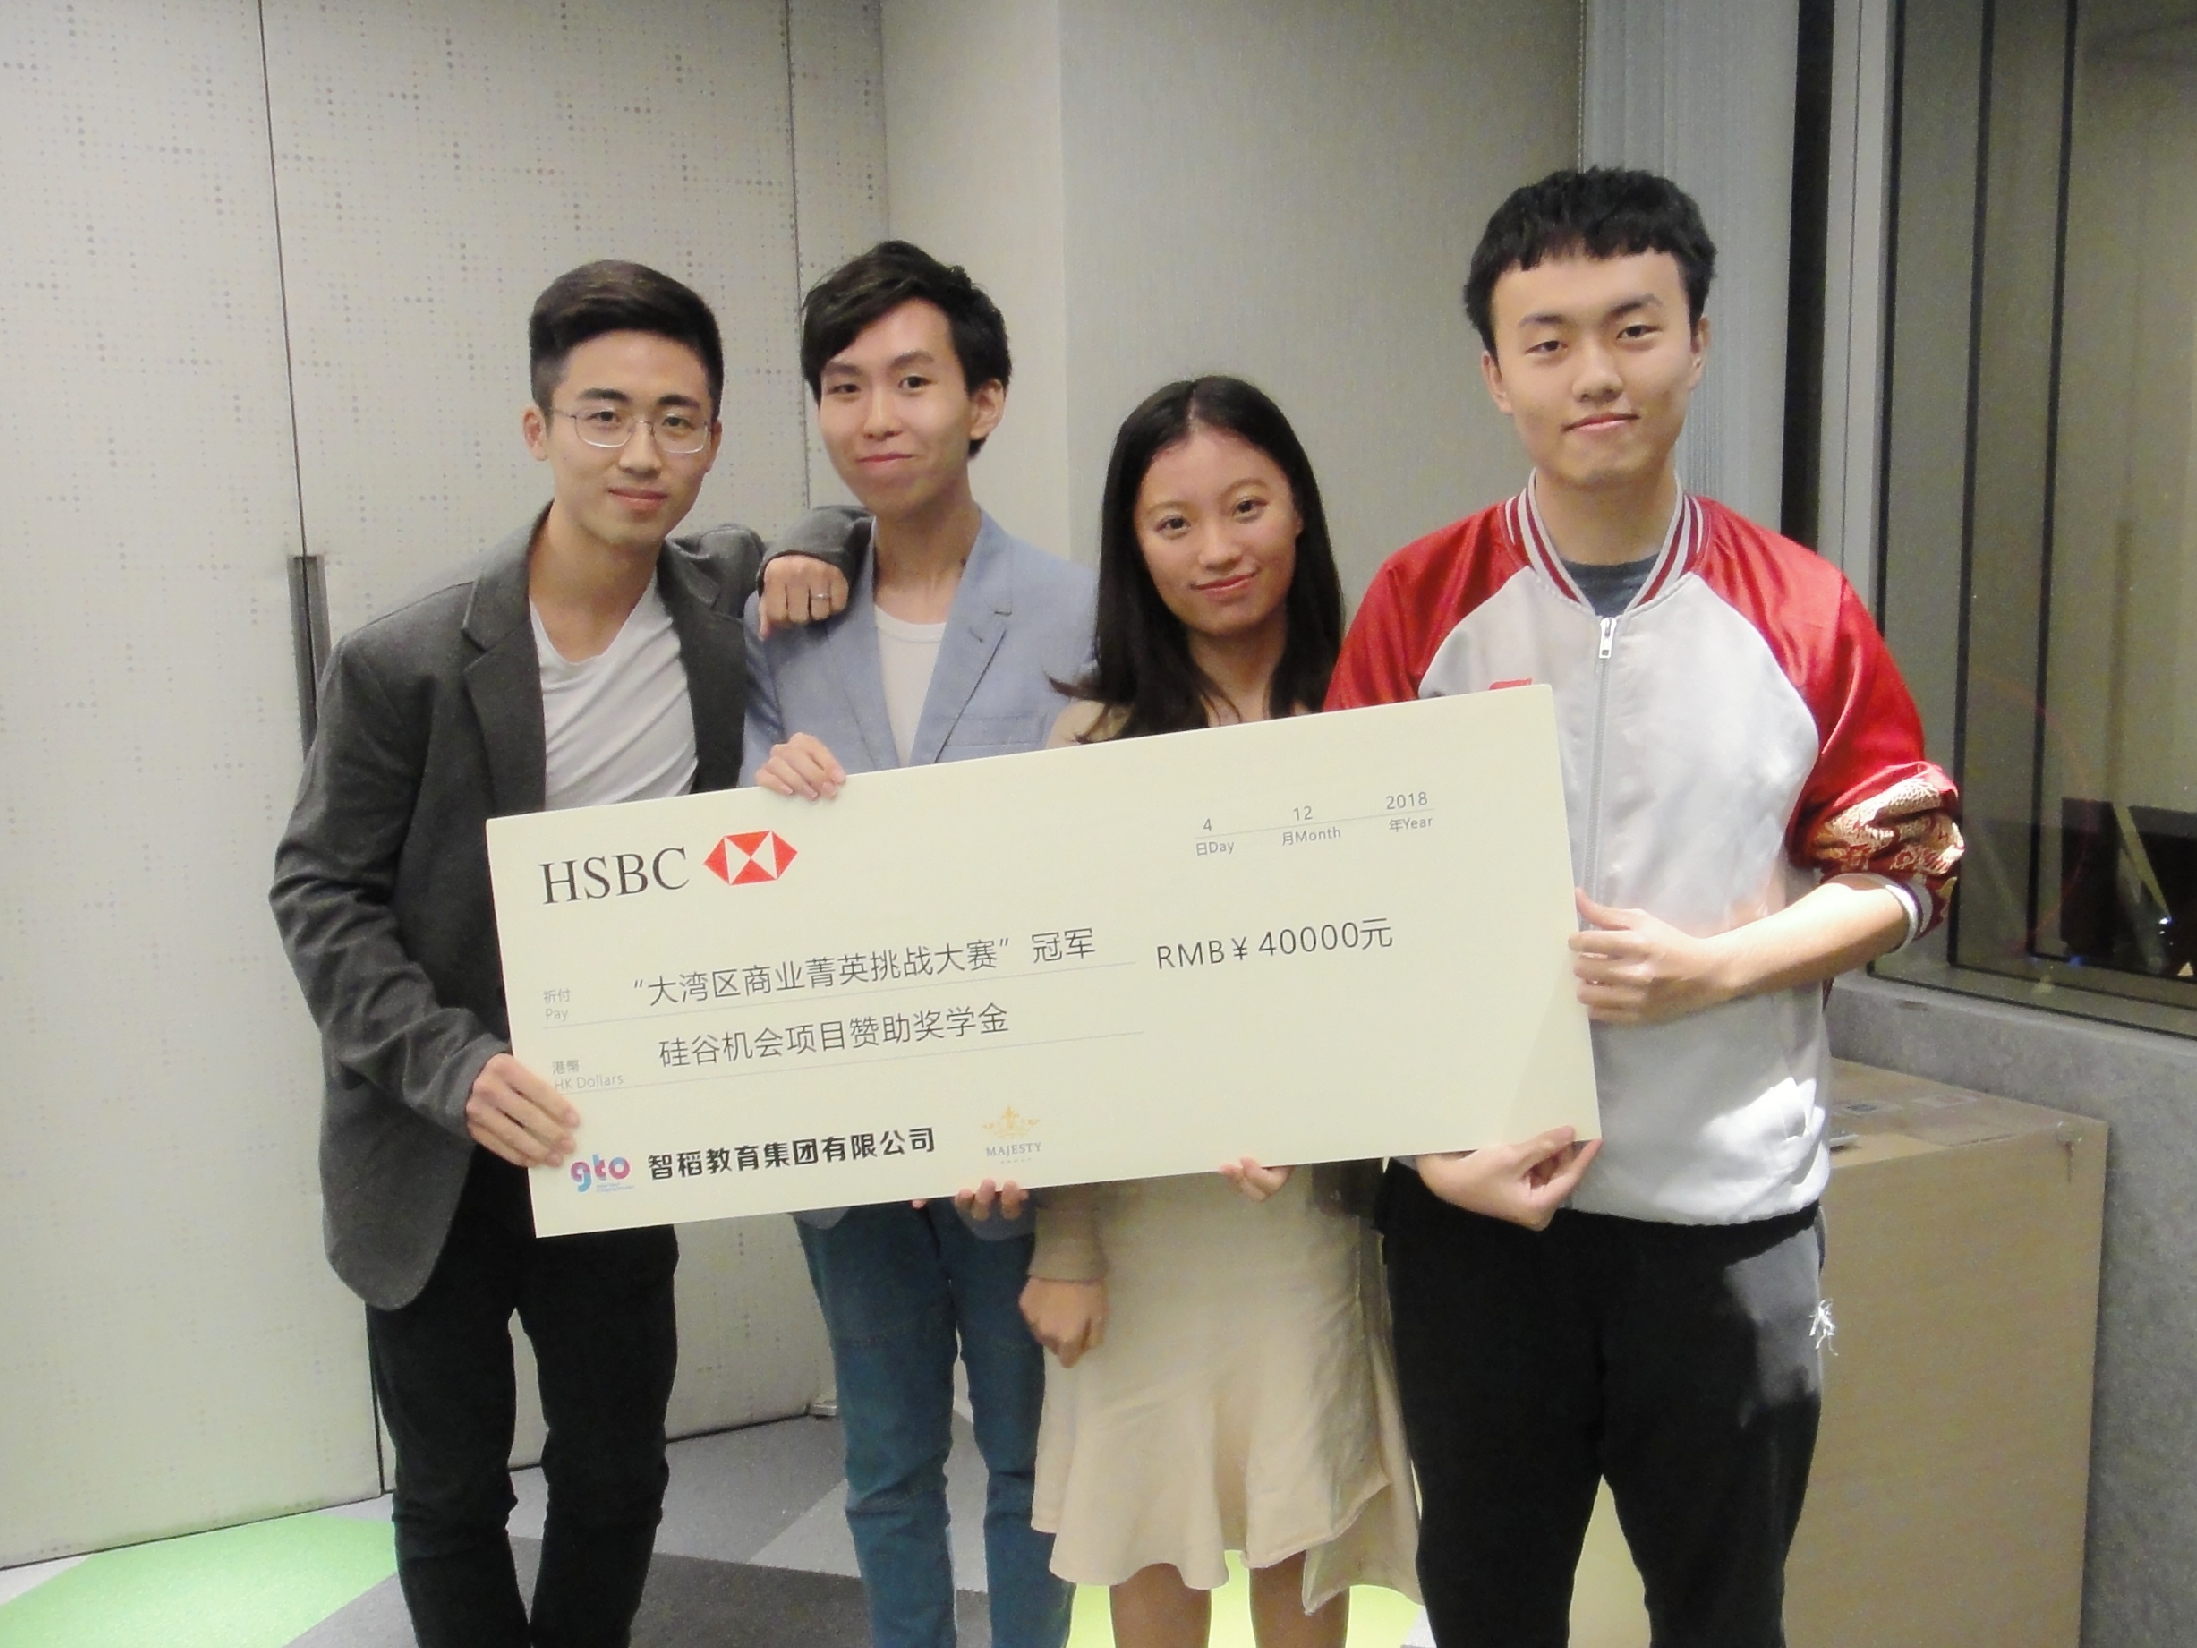 （左起）蔡双隆、冯智然、高嘉滢及张语知于是次比赛中取胜，并获颁奖学金。